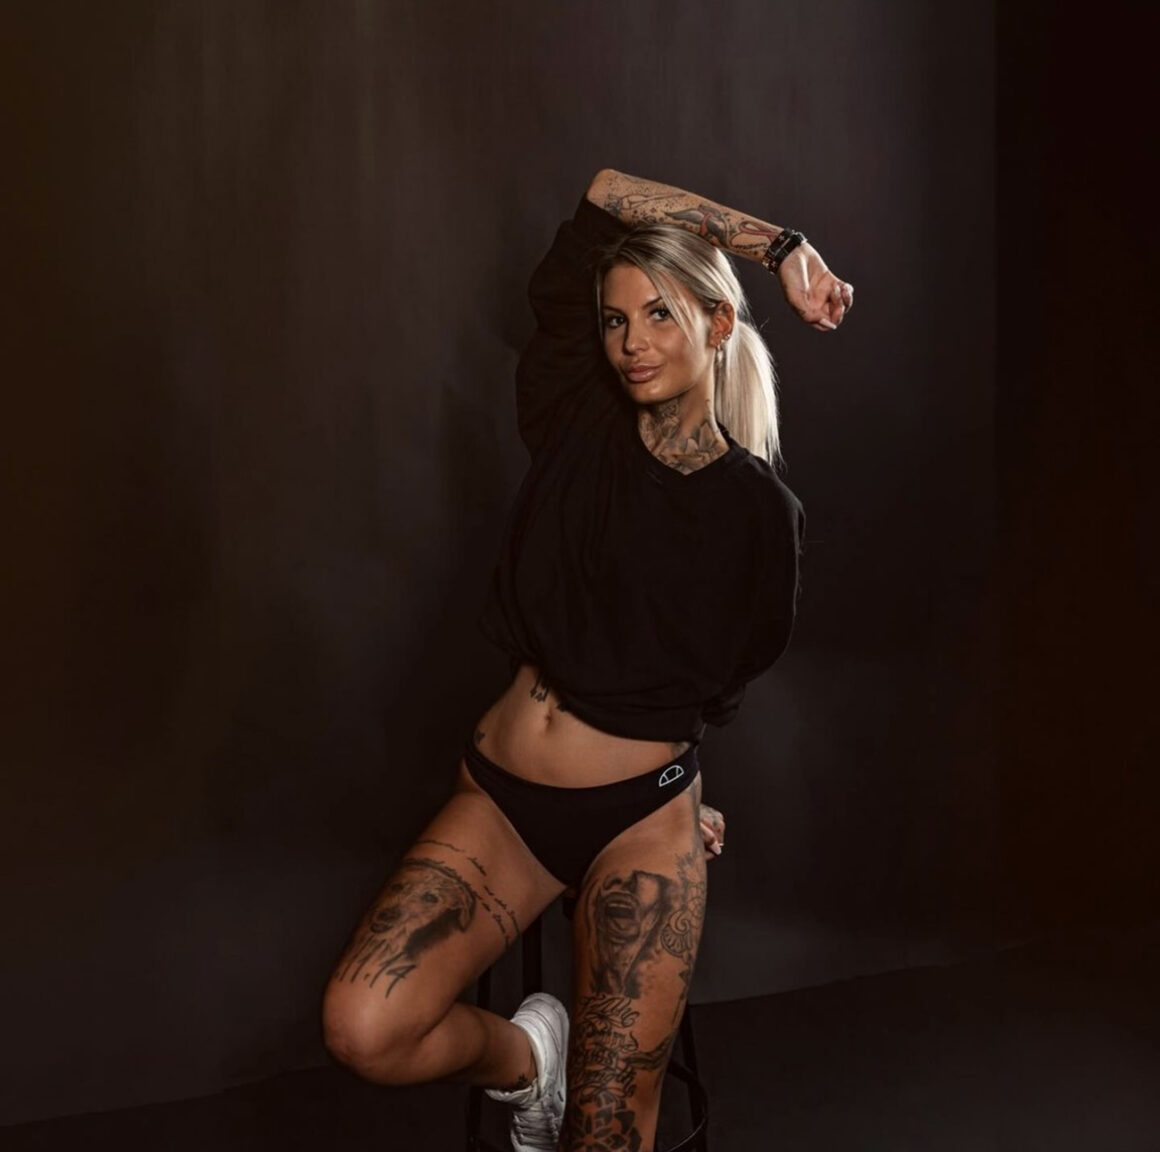 Sarah Bieger, modèle de tatouage, Photos de Max Blanke